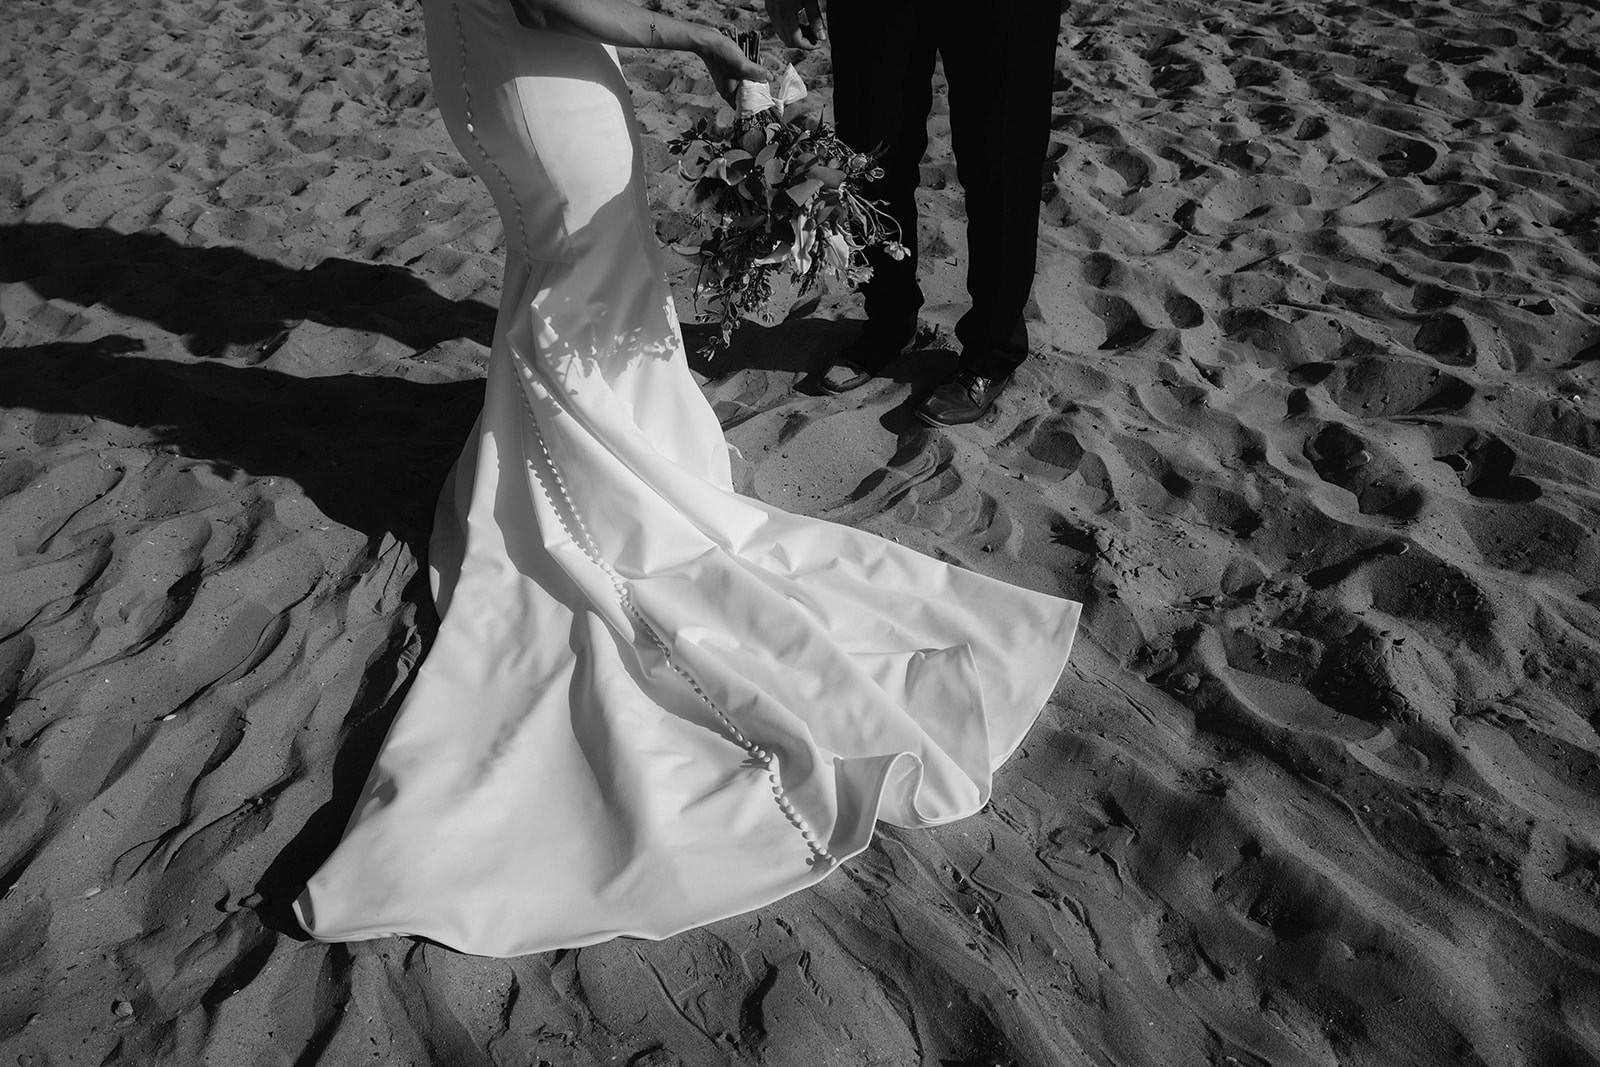 Fine art wedding dress detail shot on the beach. 